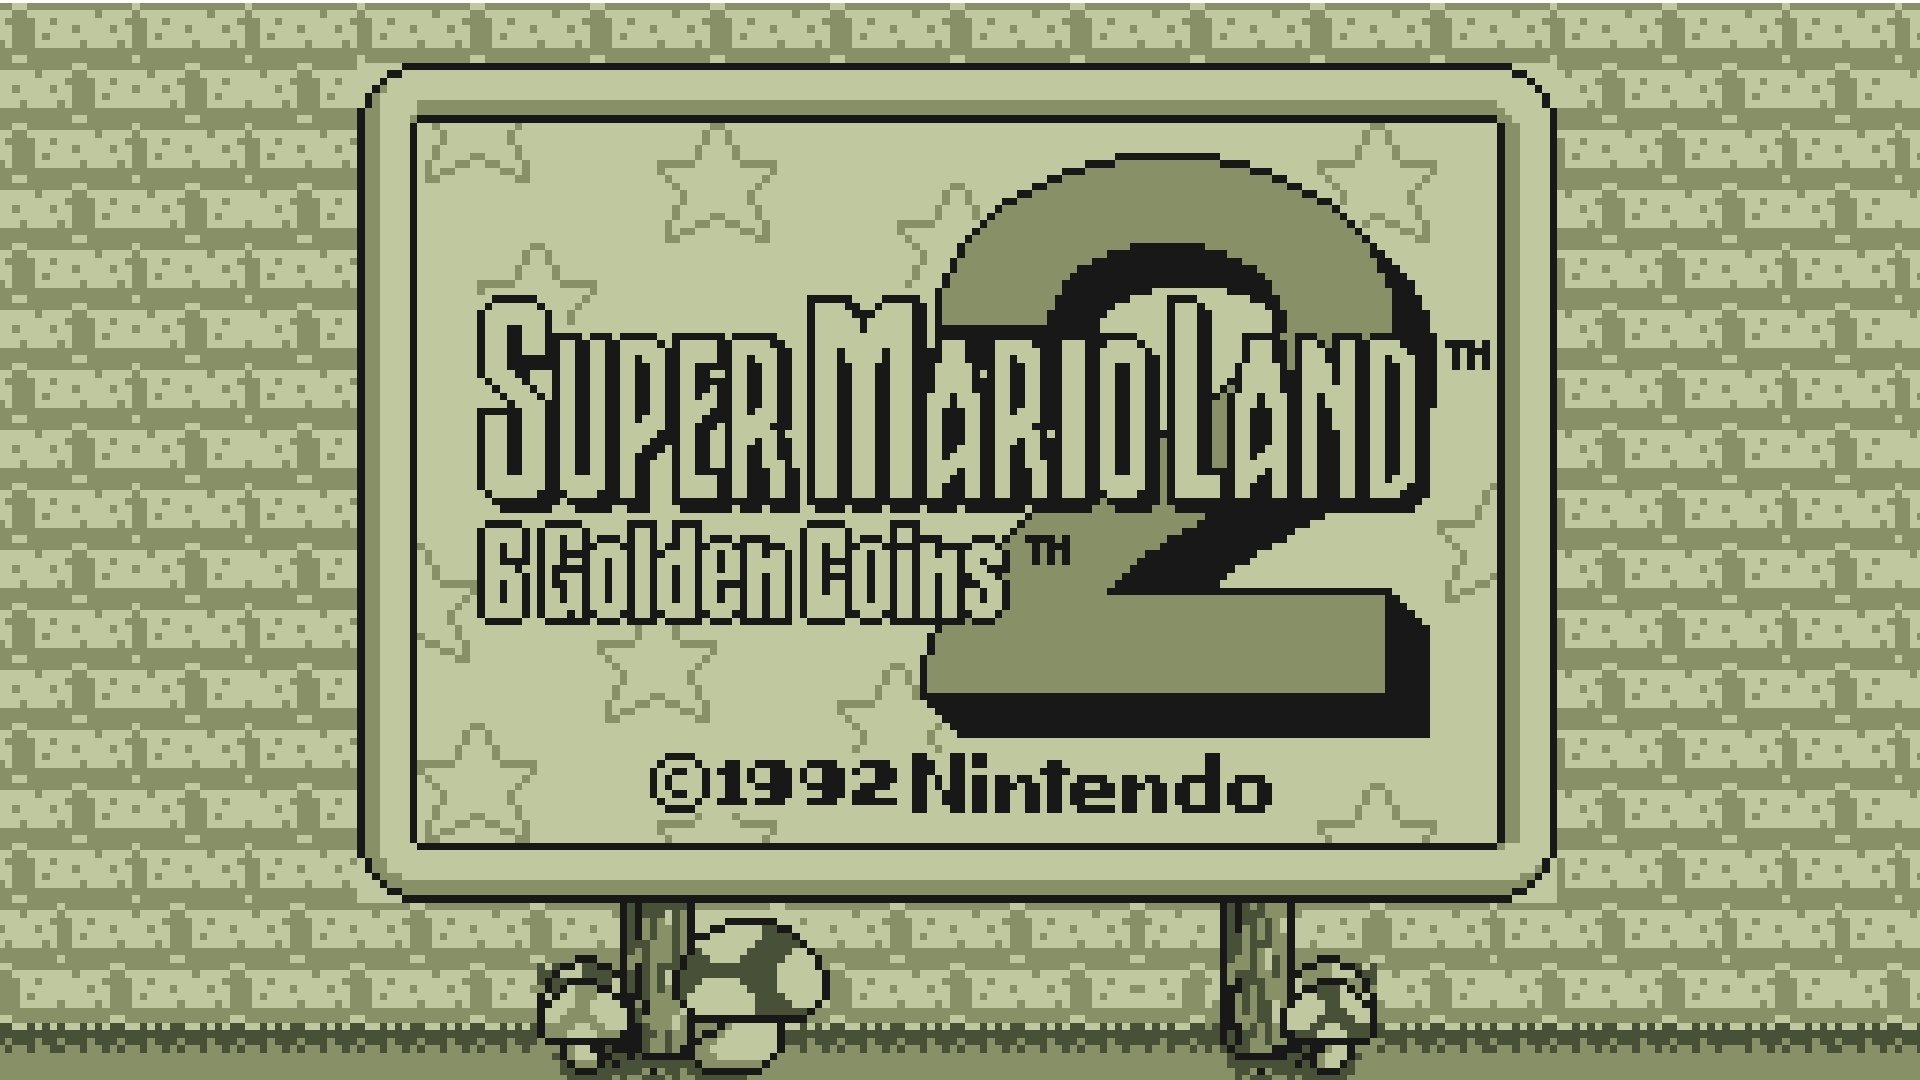 Super mario land 2 coins 6. Super Mario Land 2 6 Golden Coins. Супер Марио ленд 2 6 золотых монет. Super Mario Land. Super Mario Land GB.